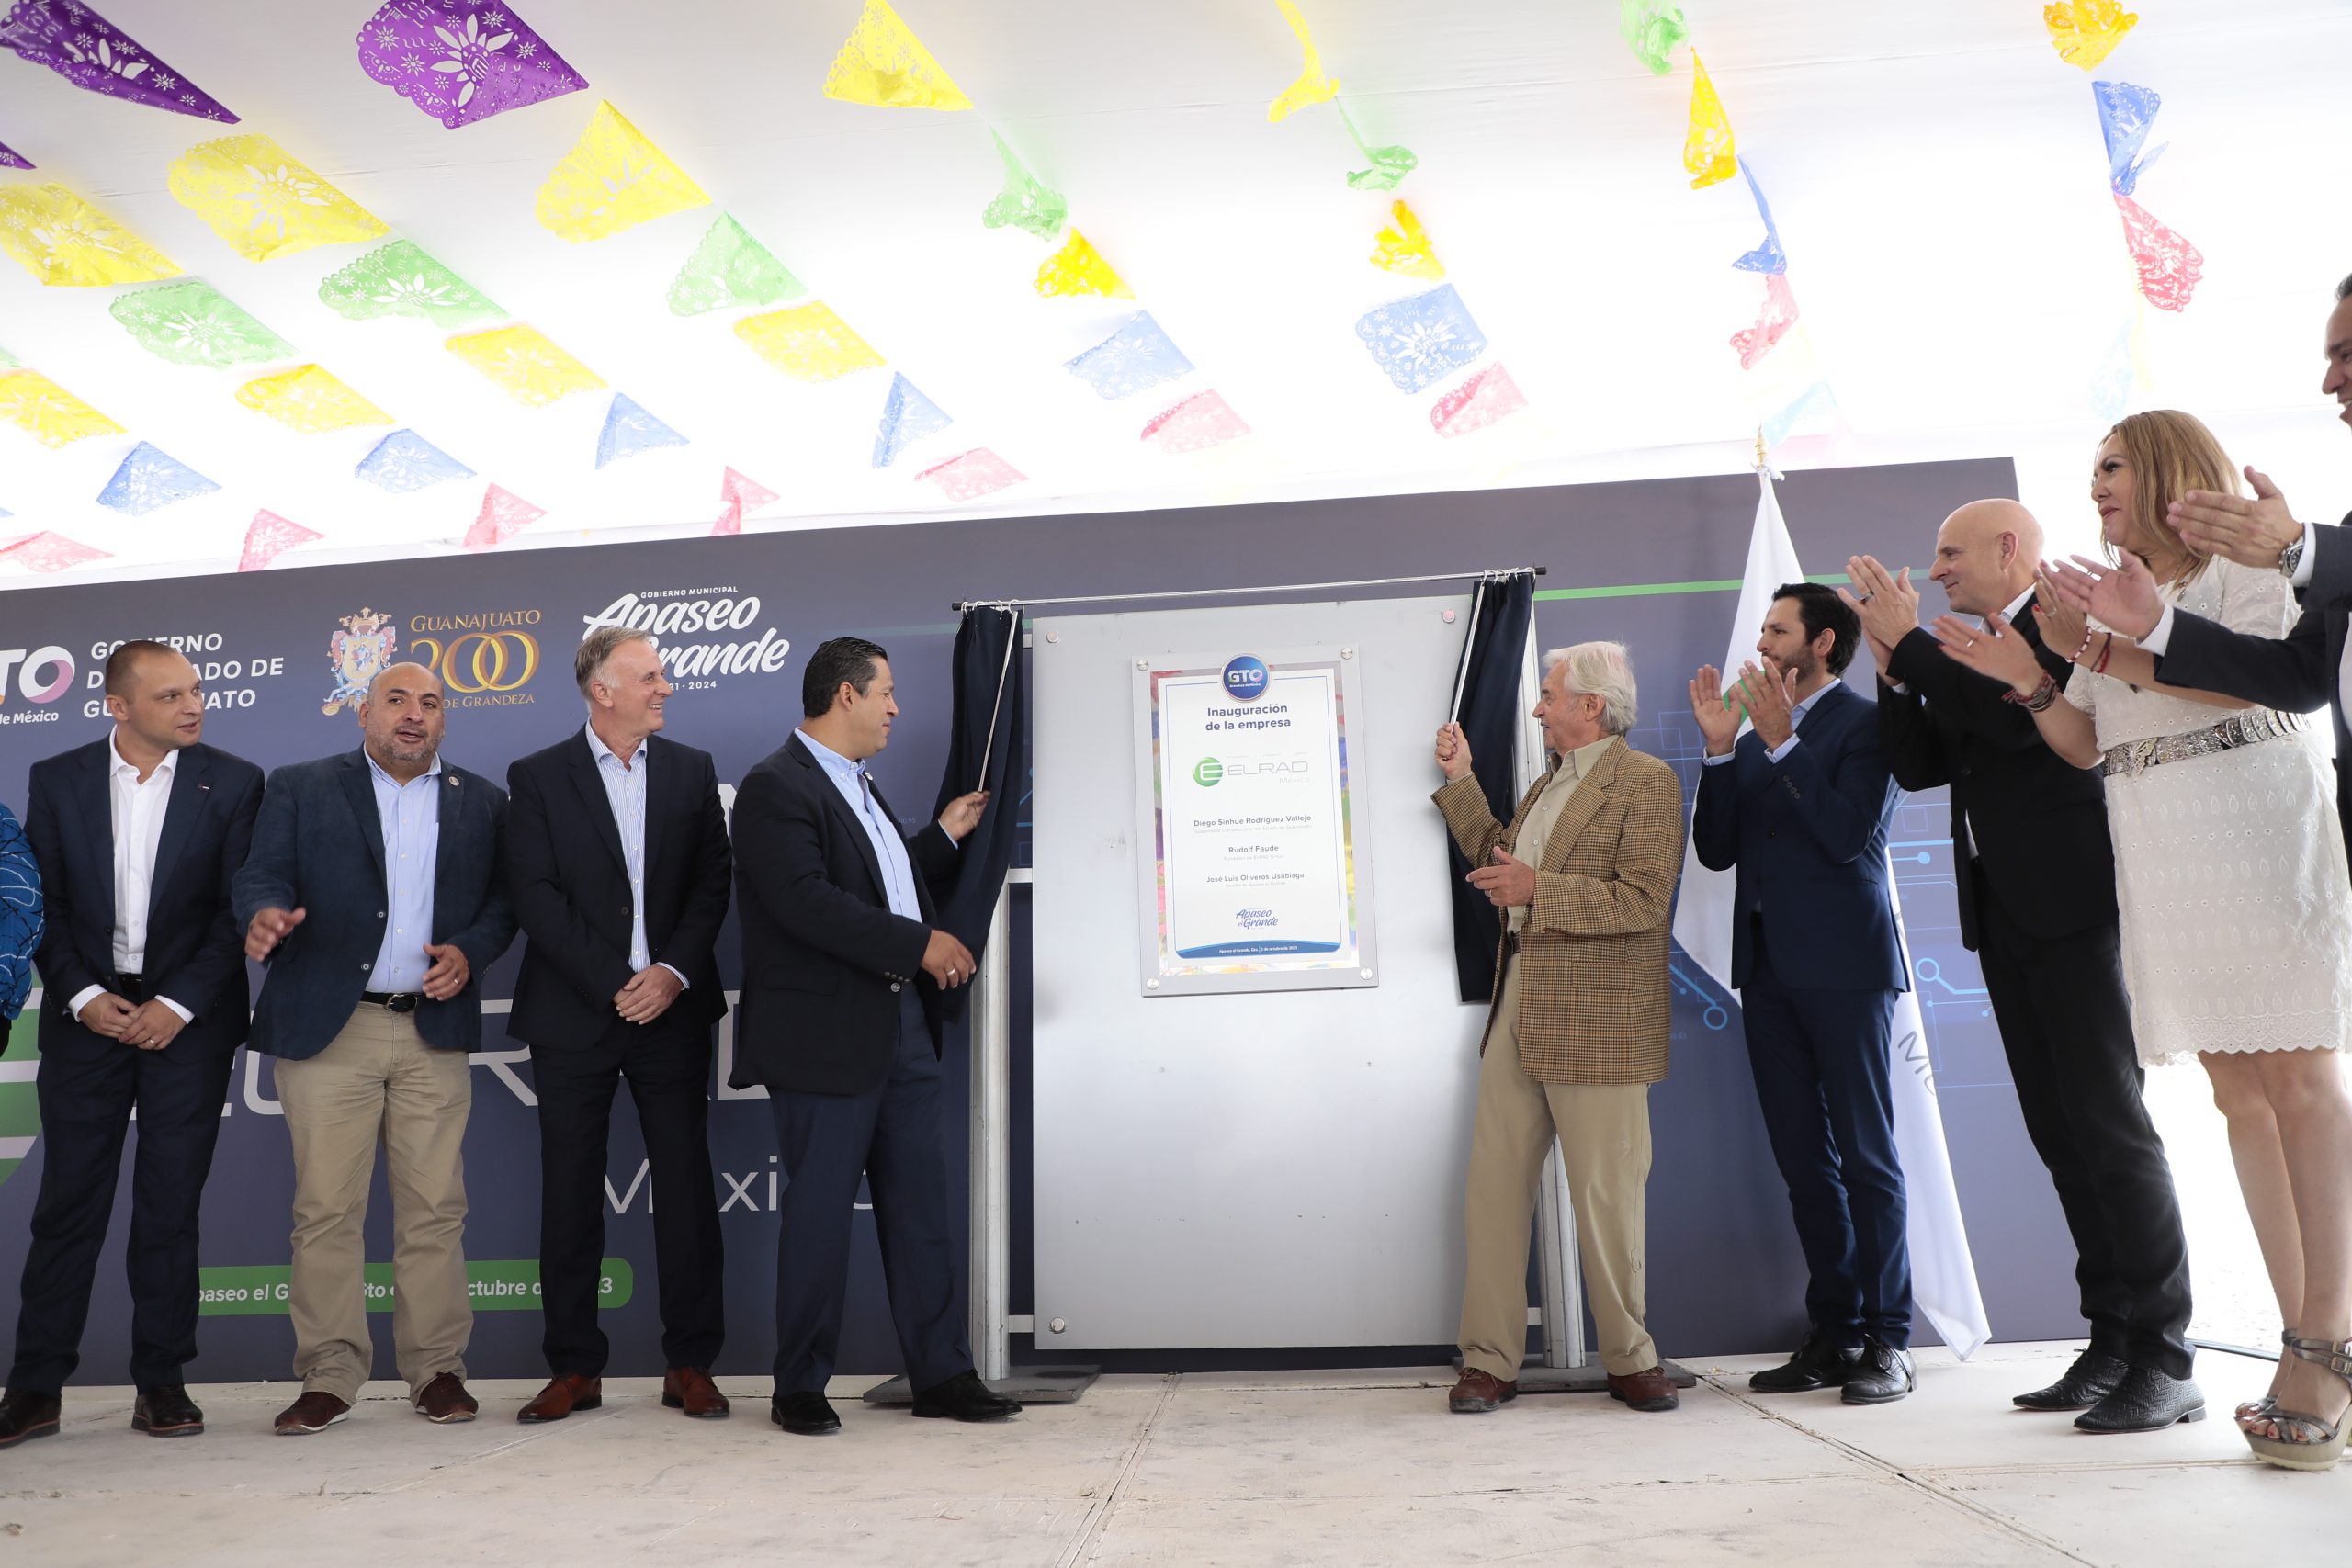 ELRAD Electronics Mexico inaugurates plant in Guanajuato